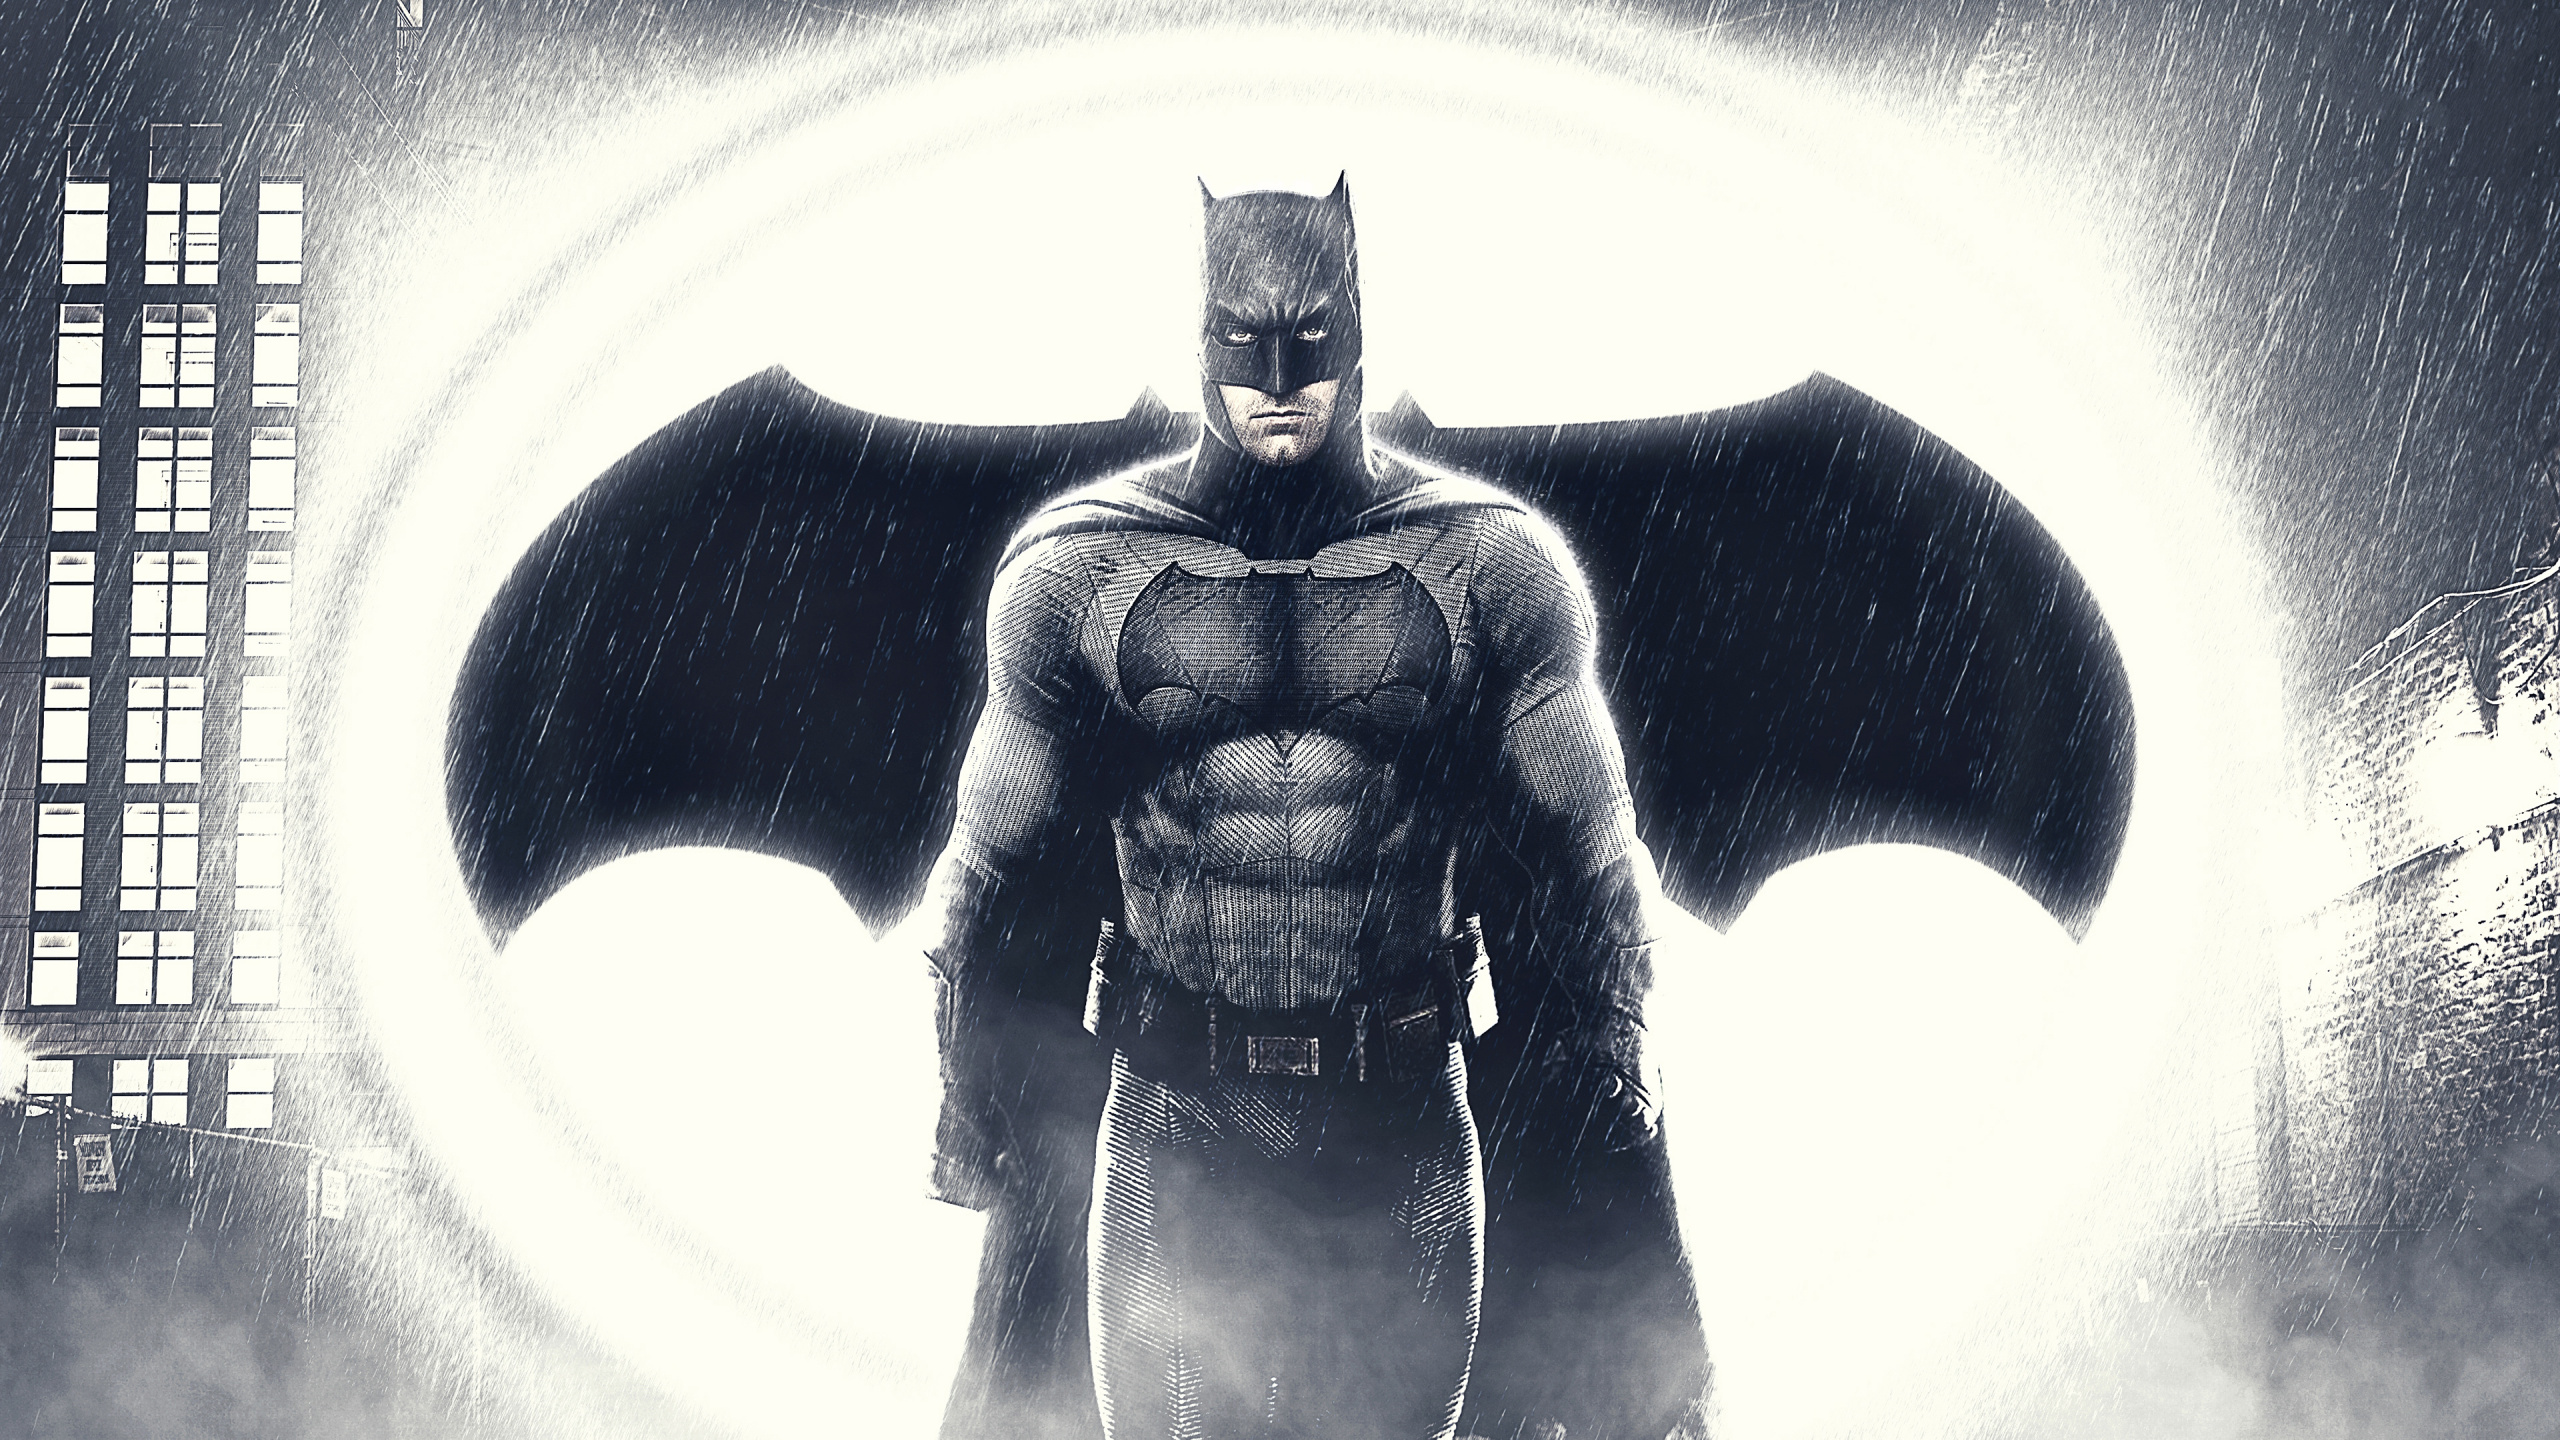 蝙蝠侠, 超级英雄, 正义联盟, 黑色和白色的, 虚构的人物 壁纸 2560x1440 允许